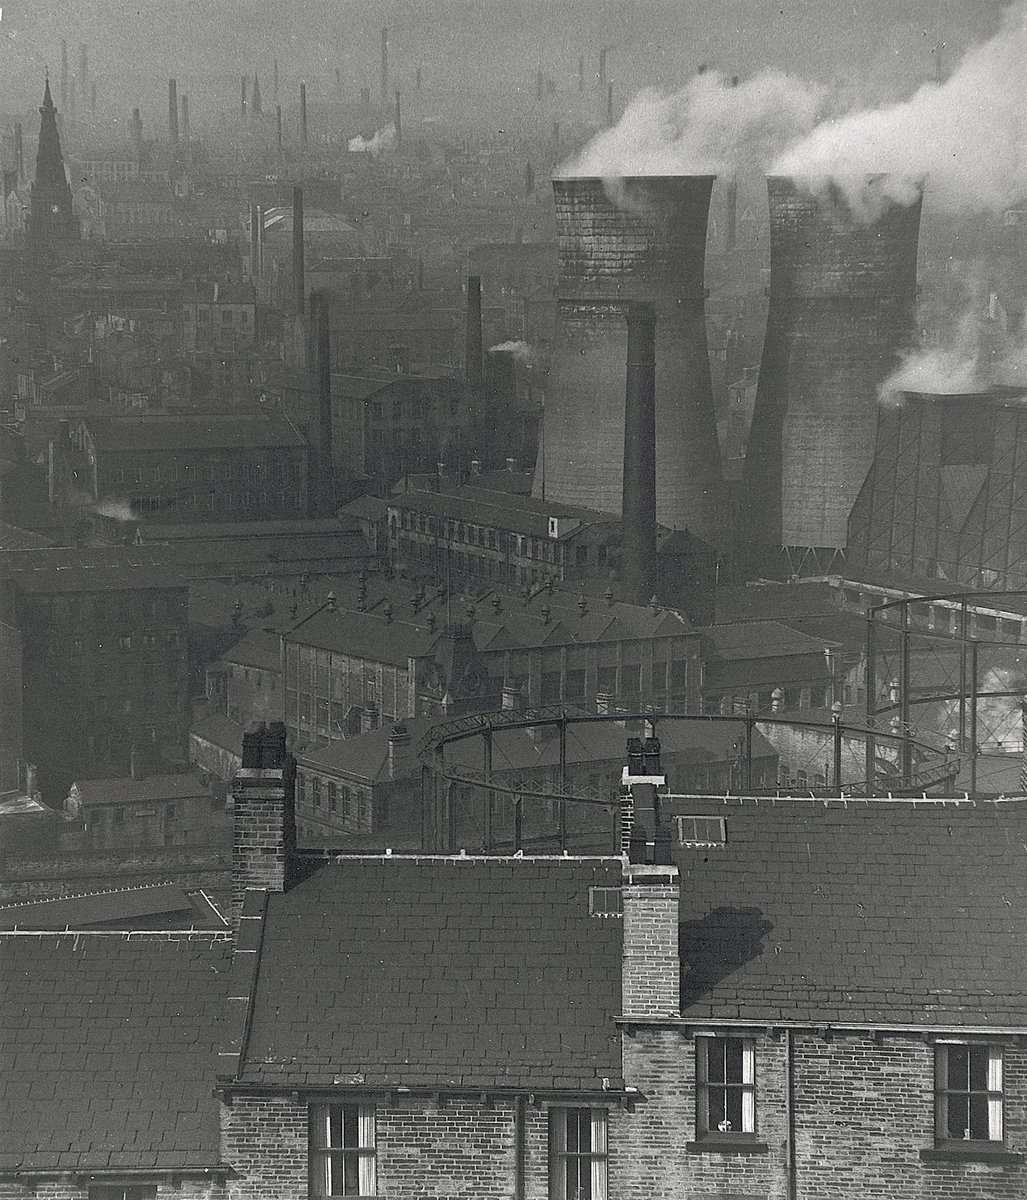 Halifax c.1950 by Bill Brandt (1904-1983) #Photography #IndustrialPhotography